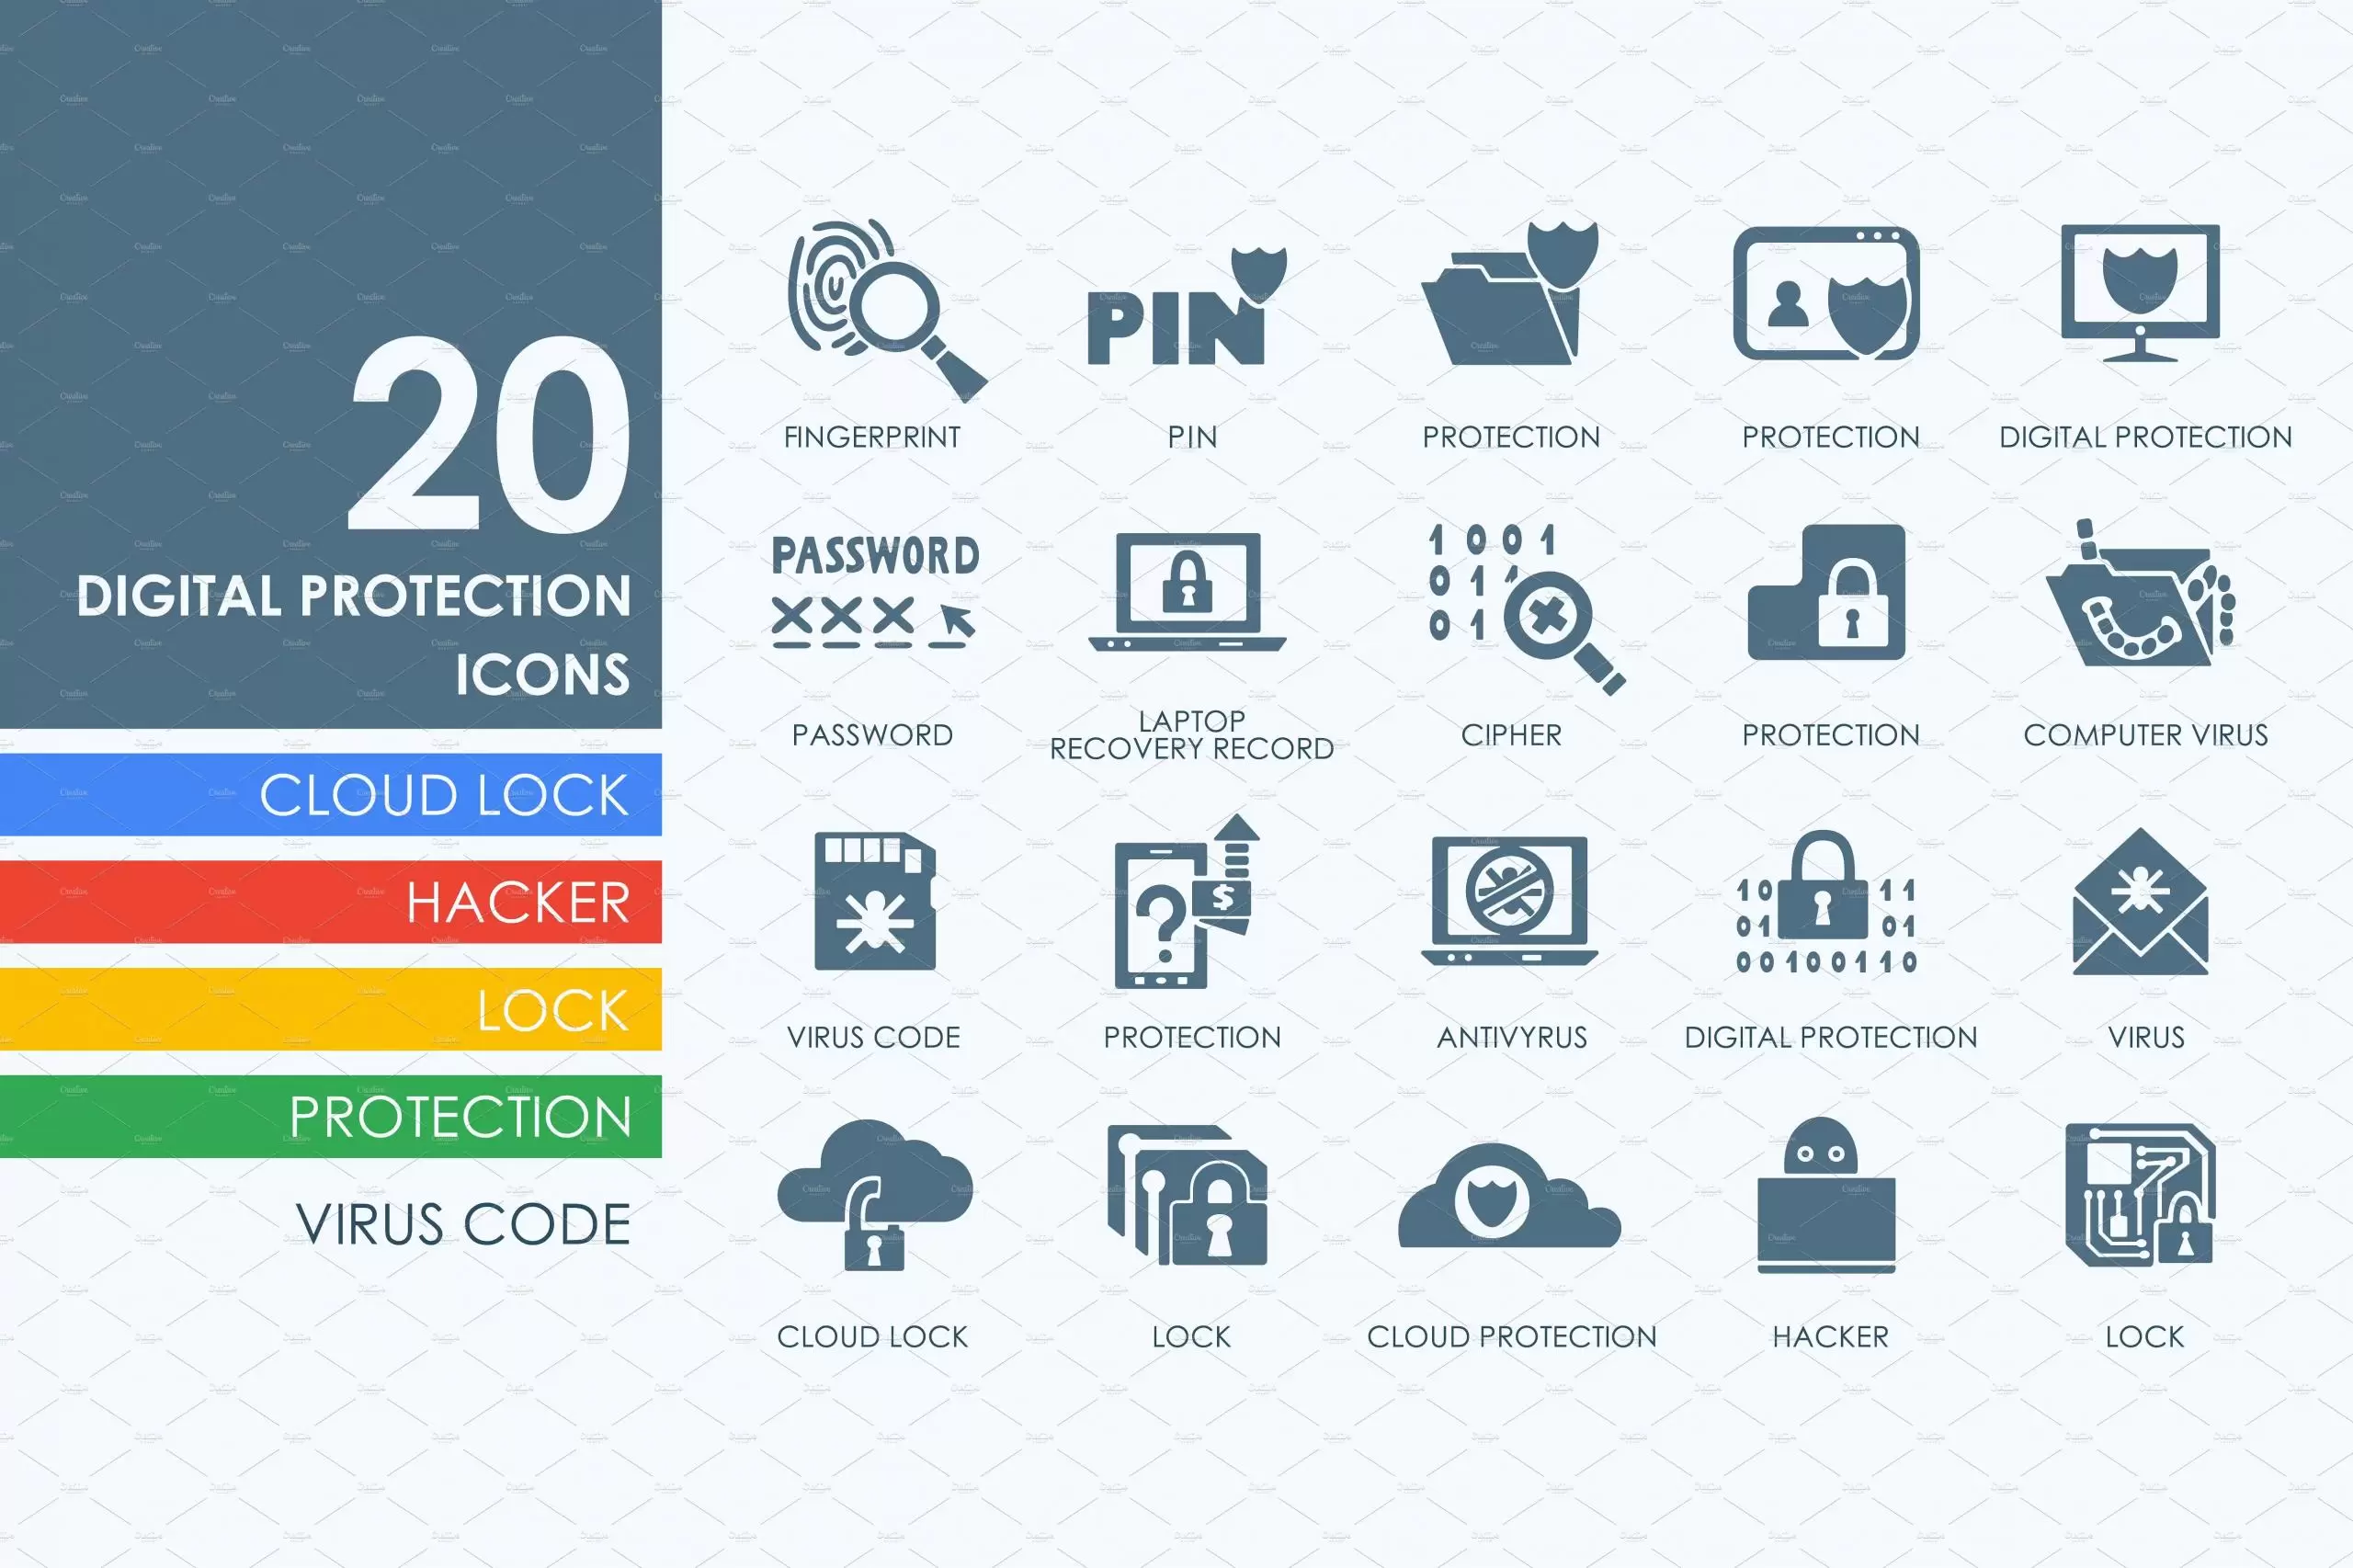 数字版权保护图标素材 20 Digital Protection icons插图